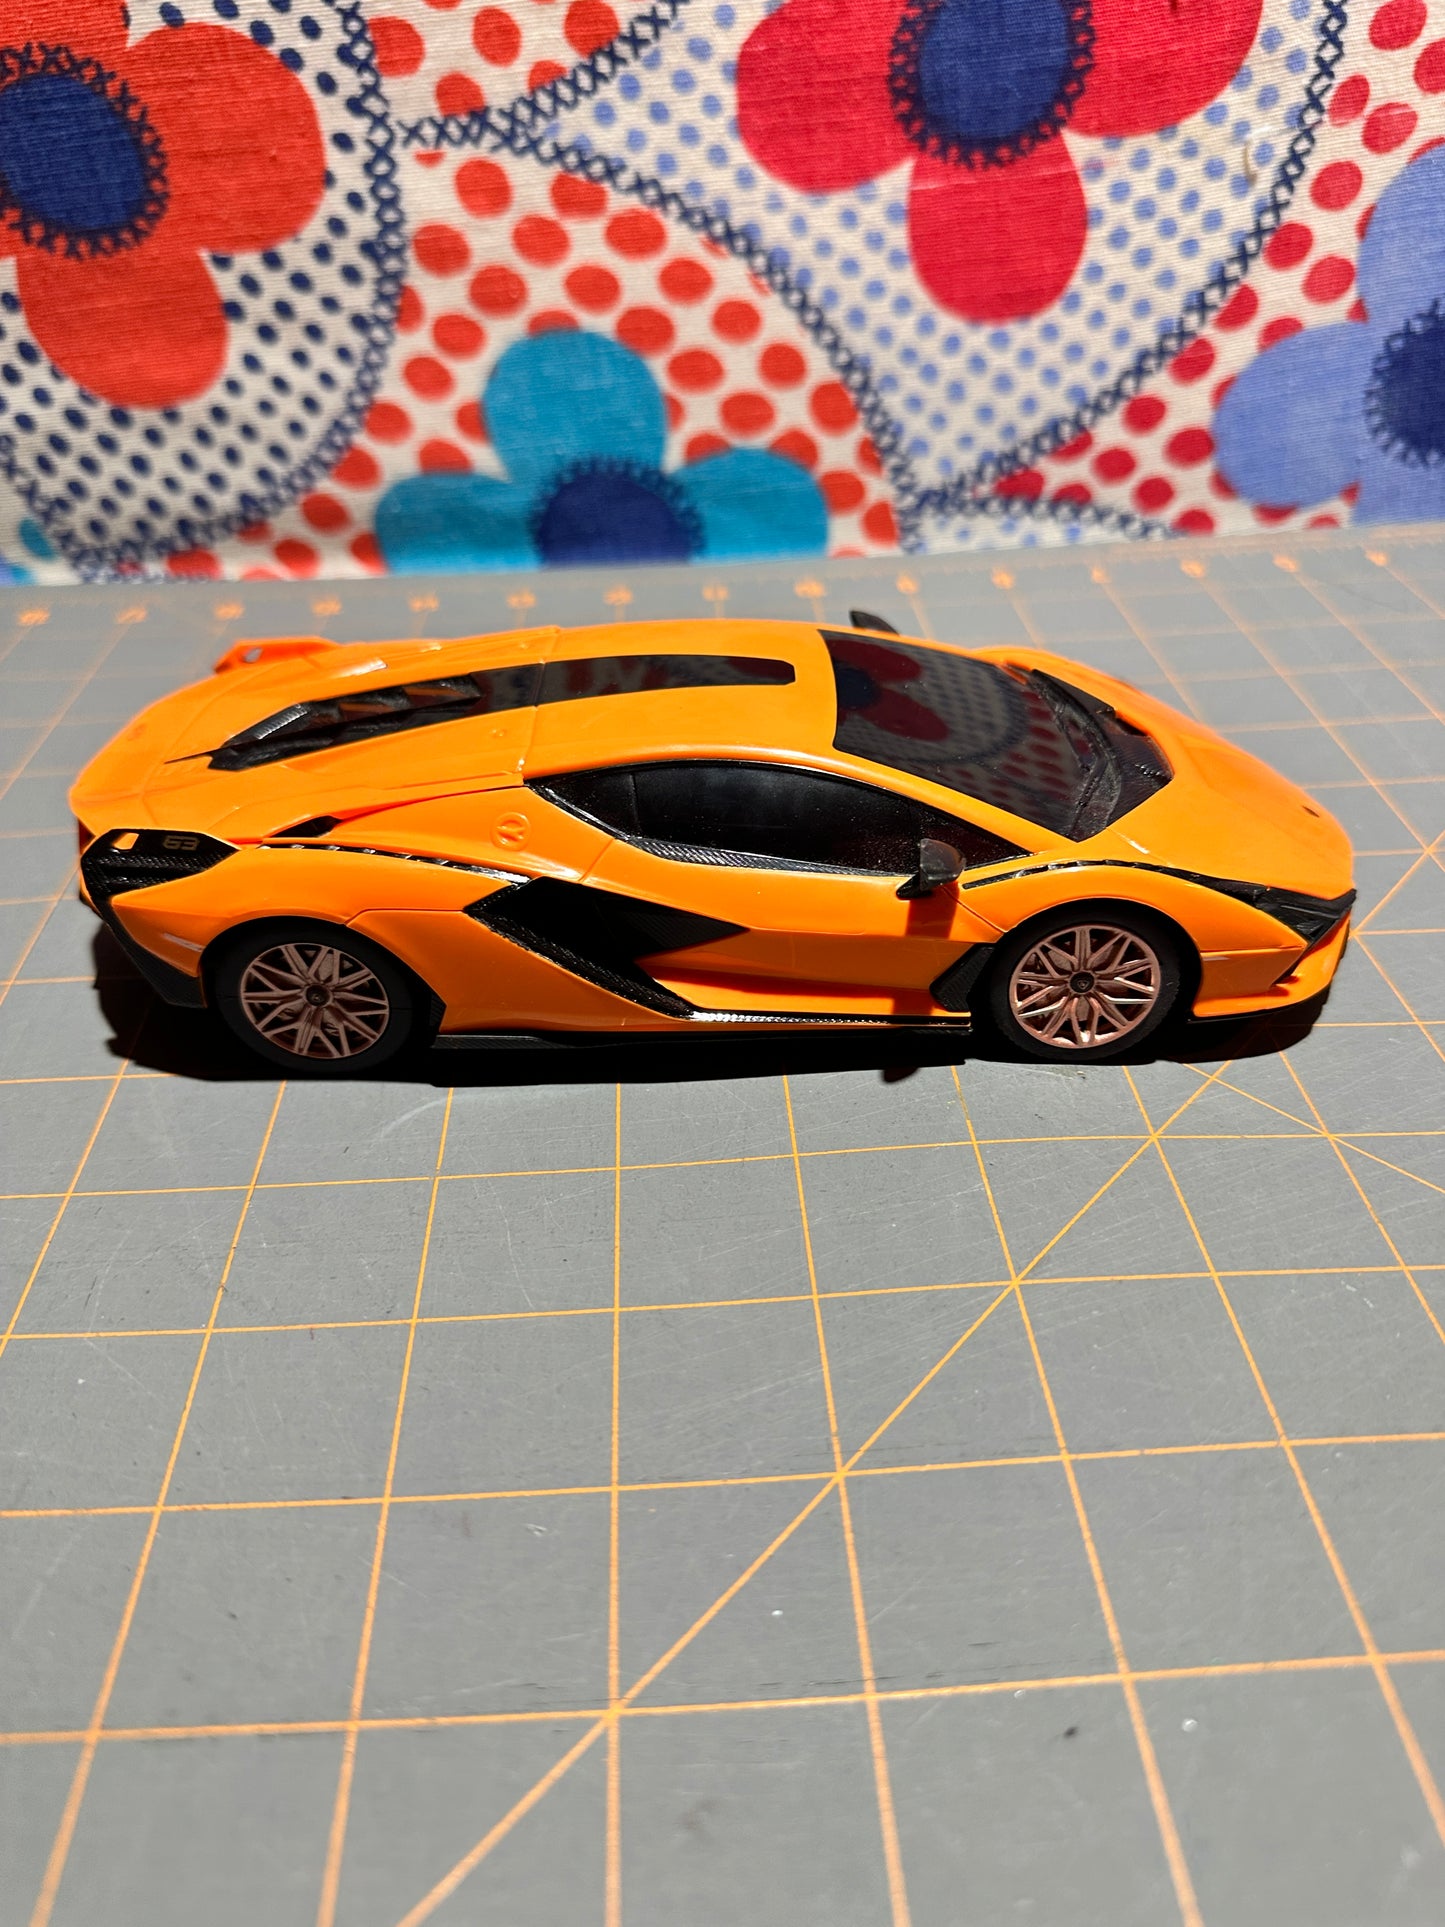 Rastar 1:24 Scale Lamborghini Aventador - NO REMOTE